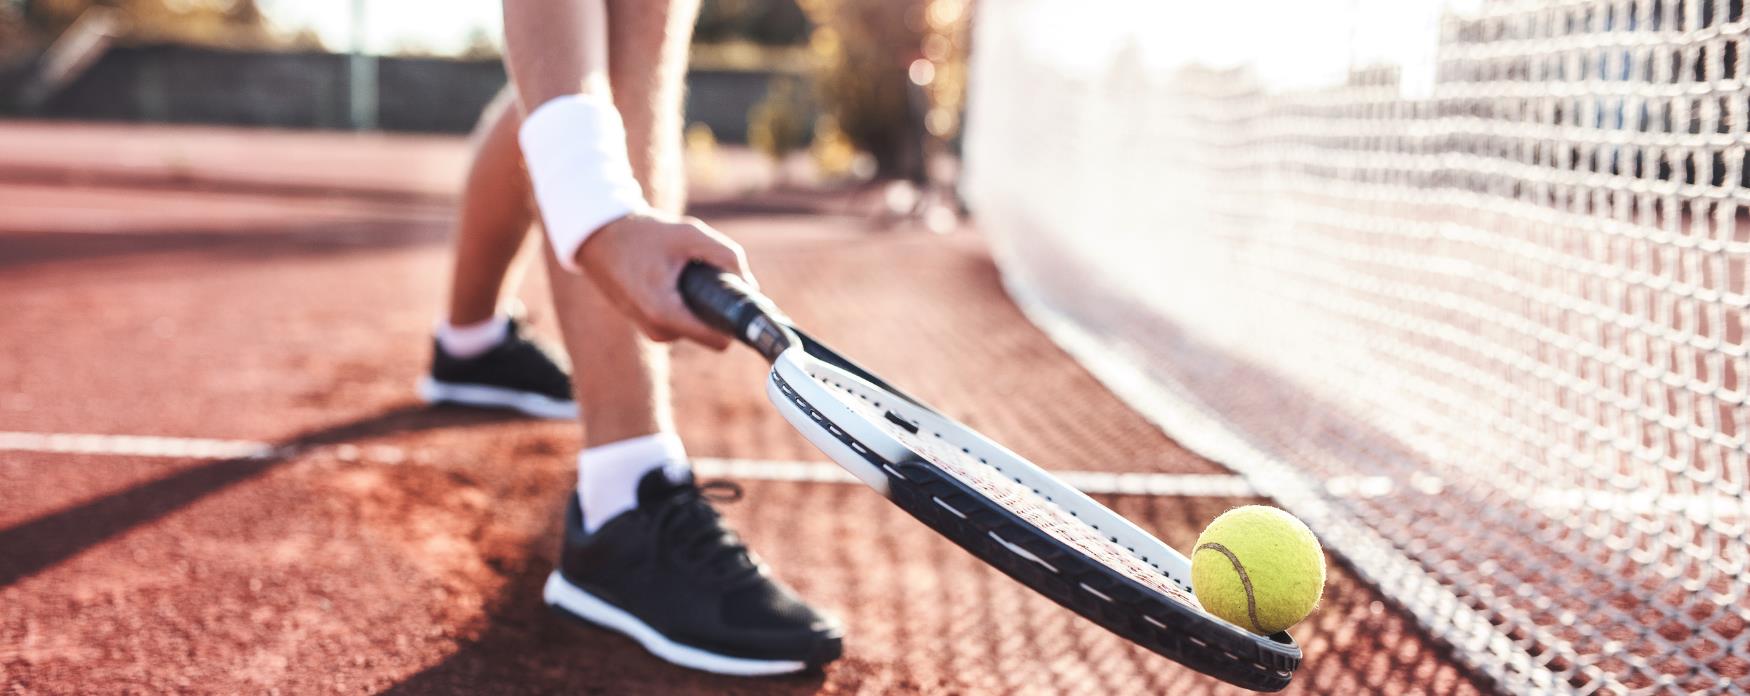 Tennis player picking up a tennis ball